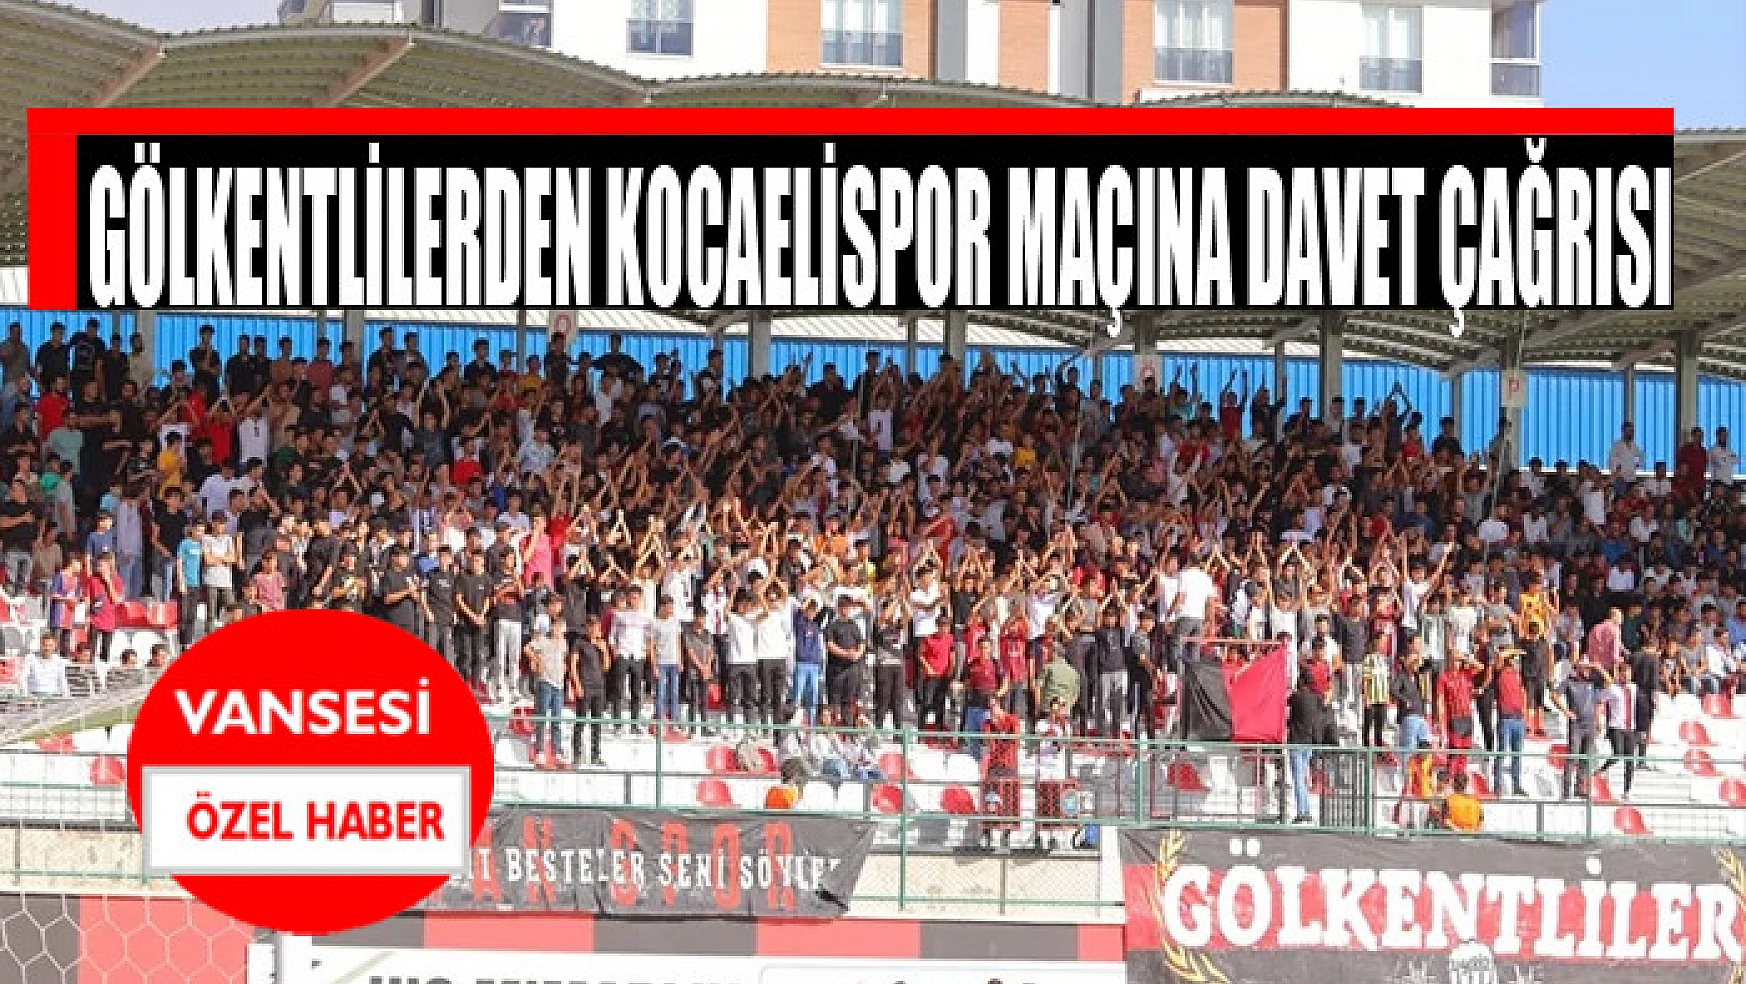 Gölkentlilerden Kocaelispor maçına davet çağrısı